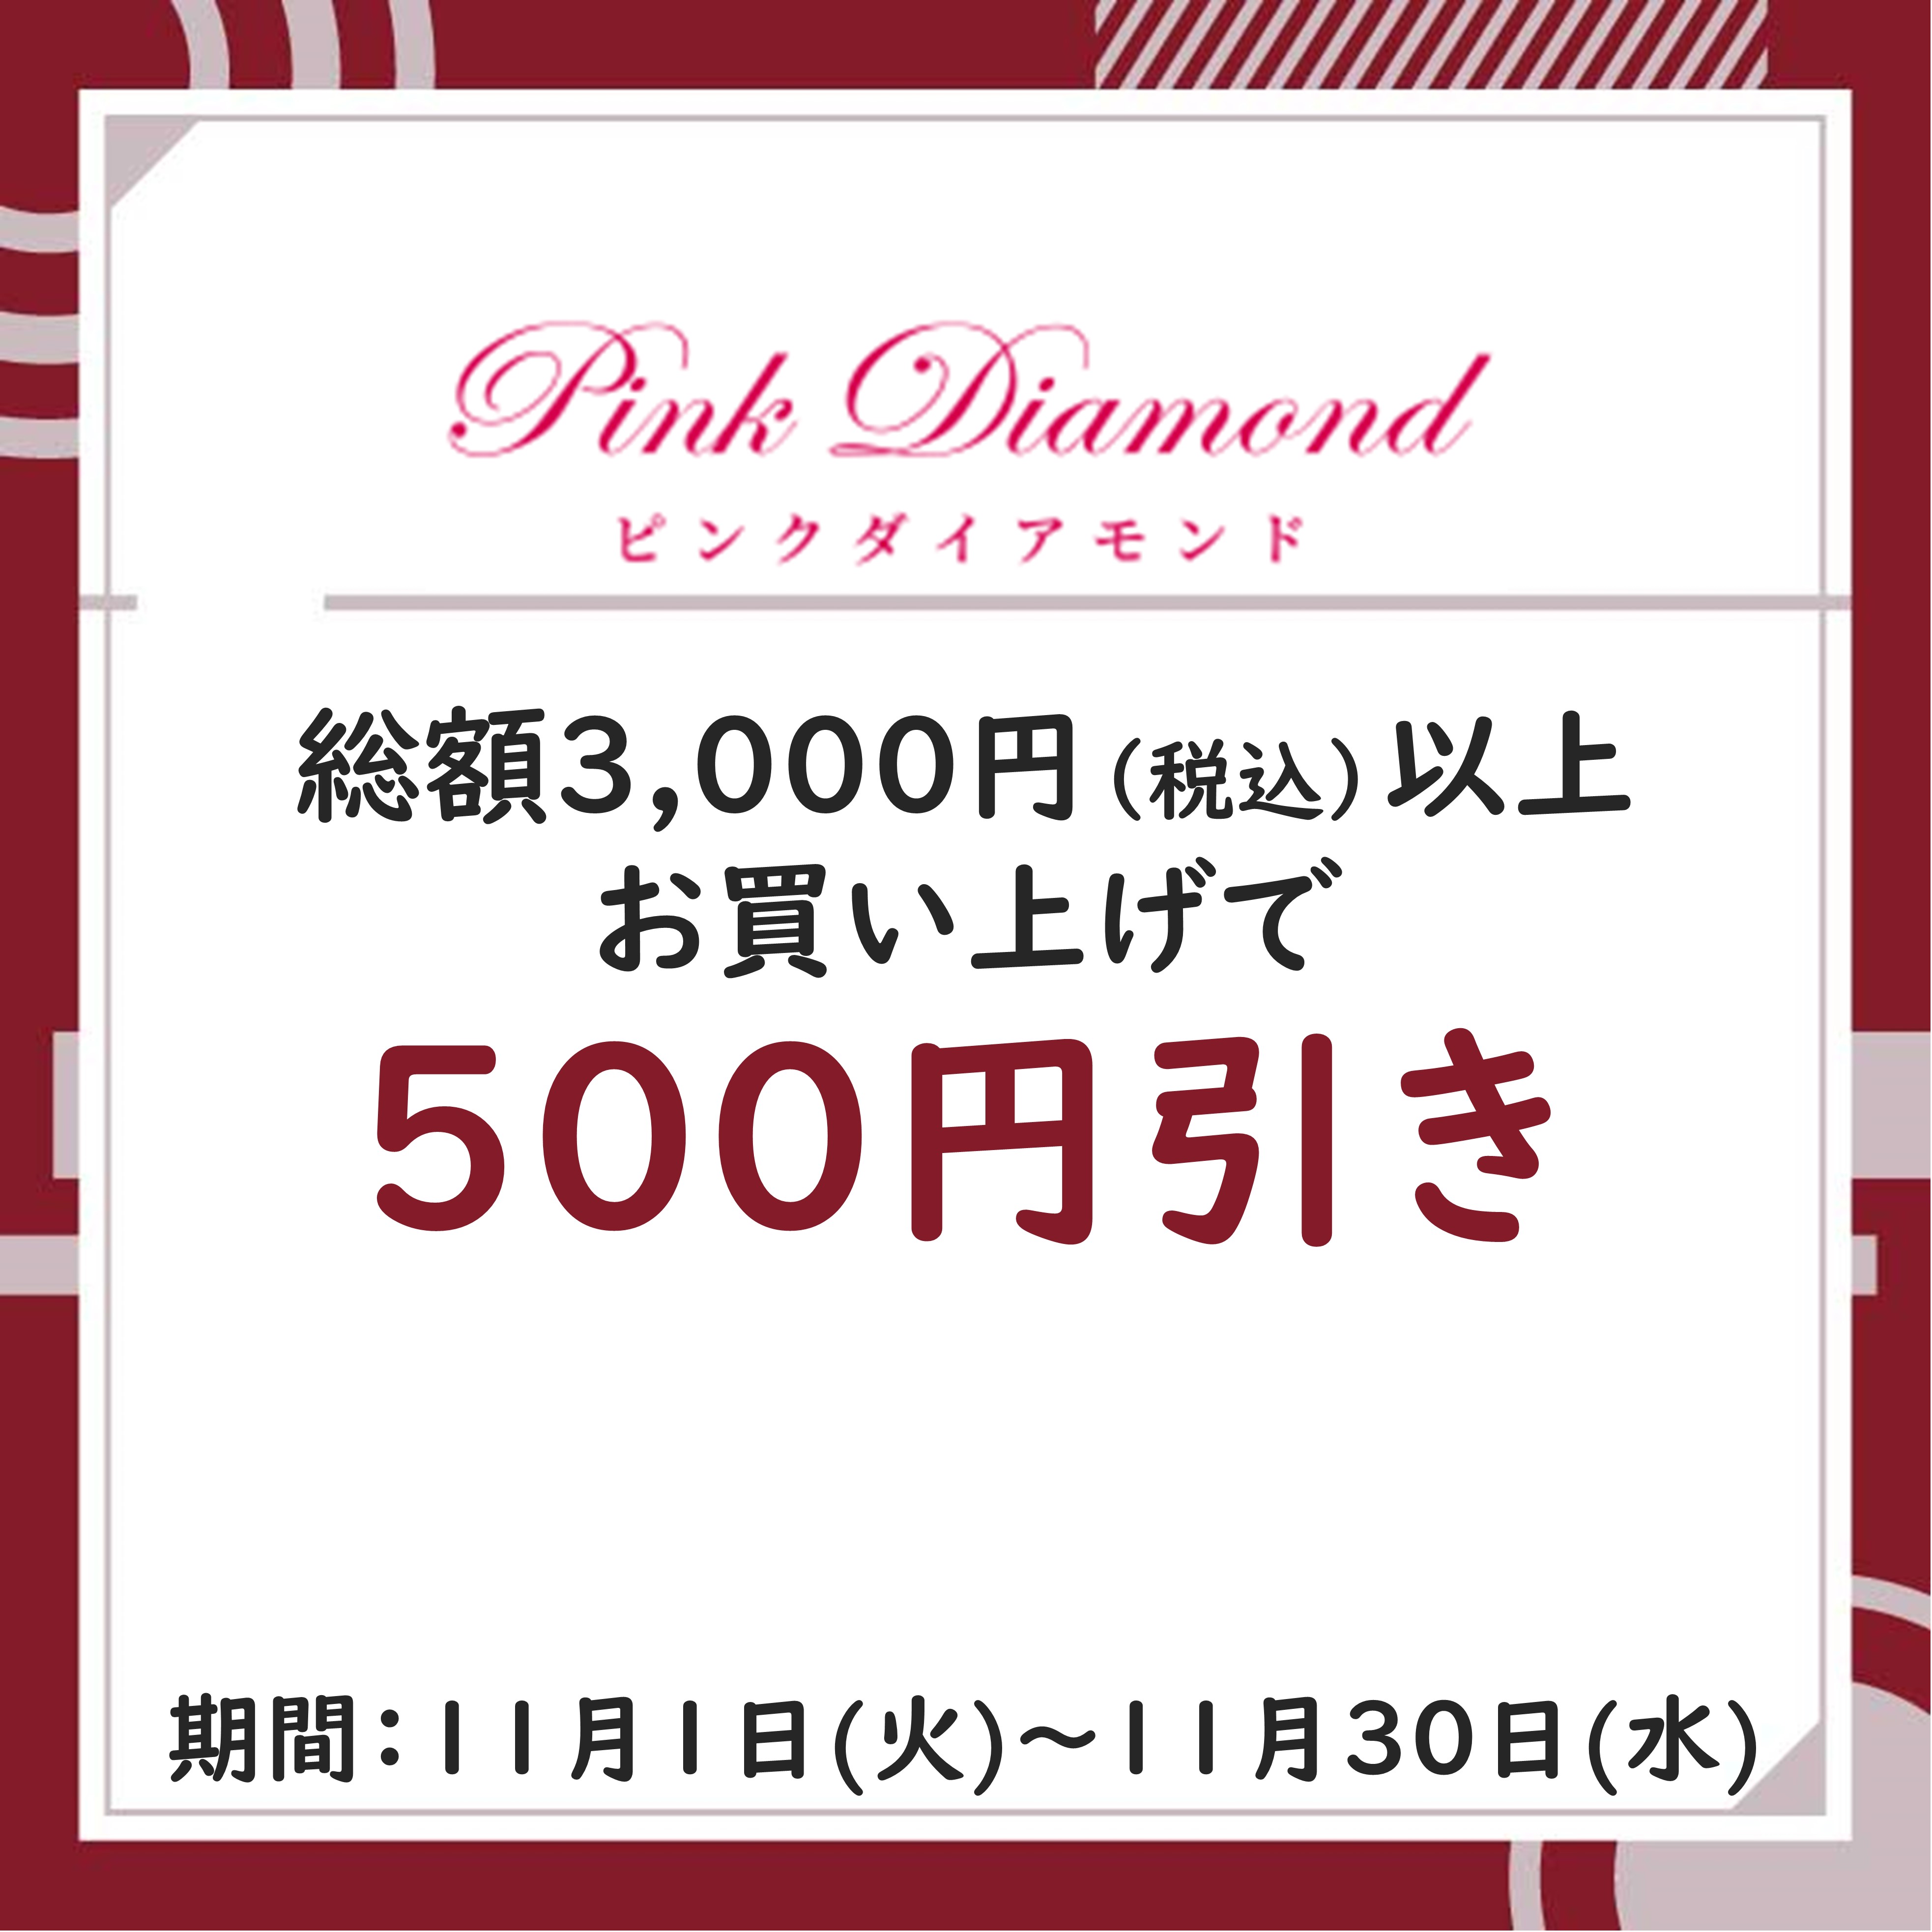 Pink Diamond.JPG